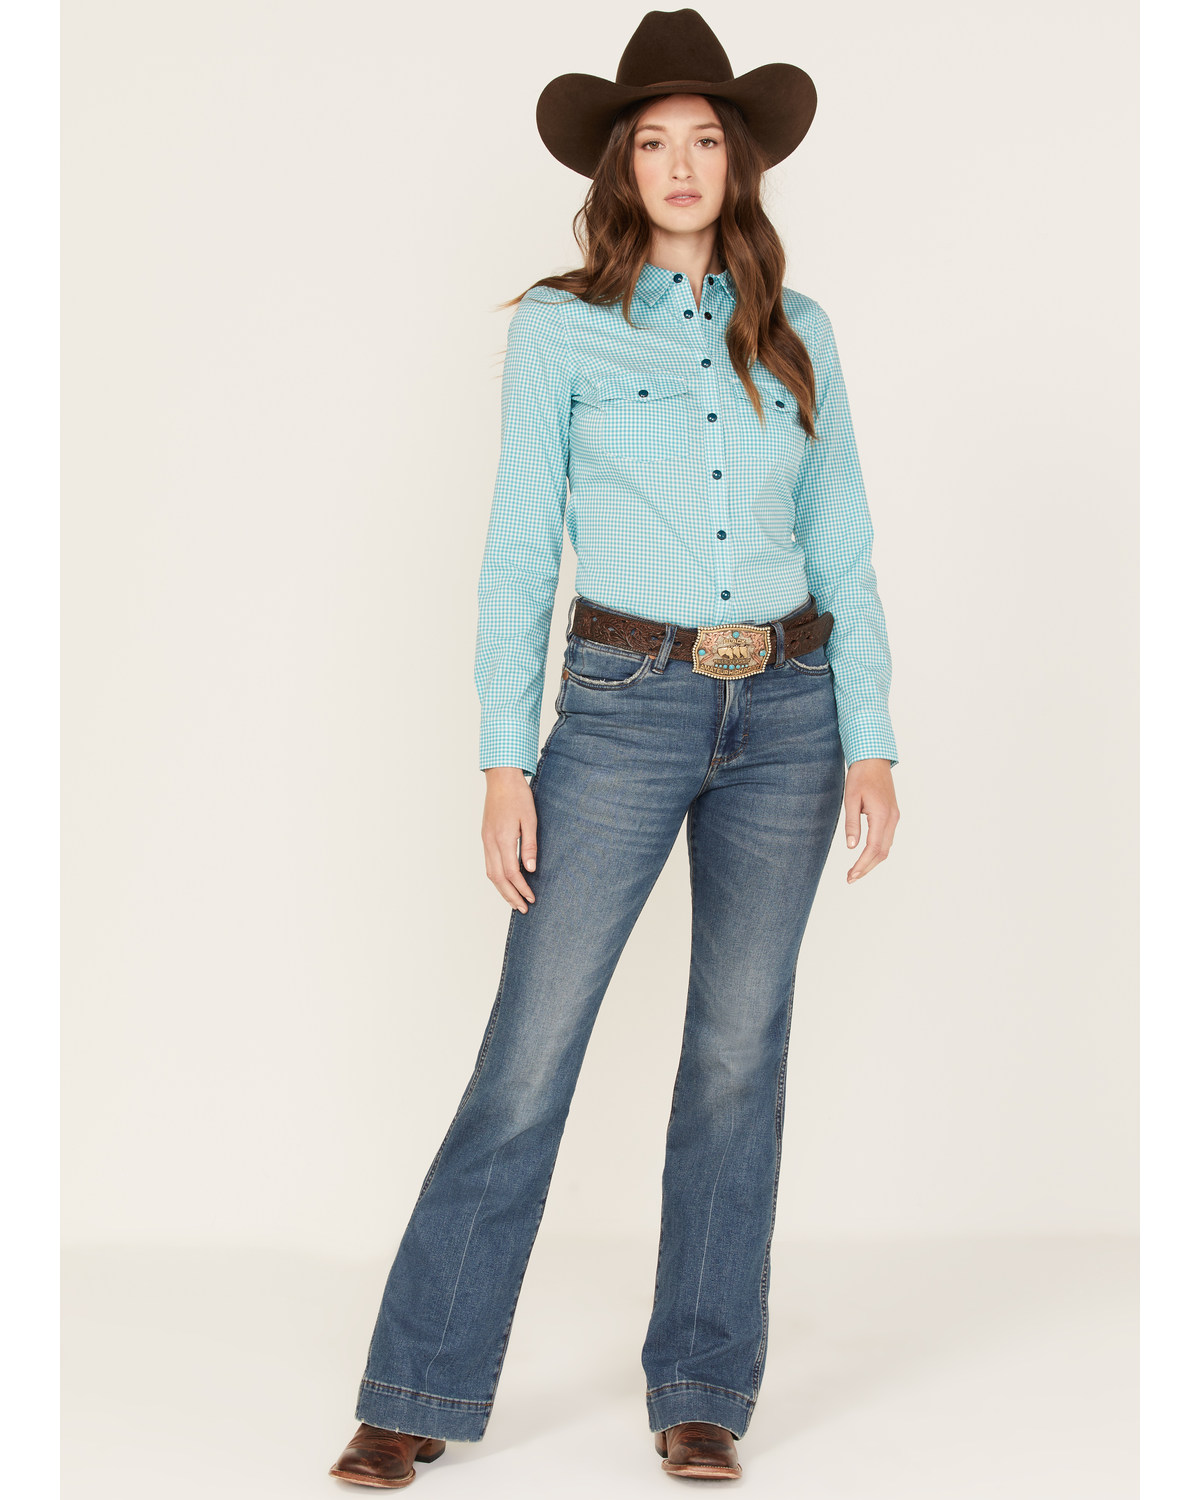 wrangler retro jeans women